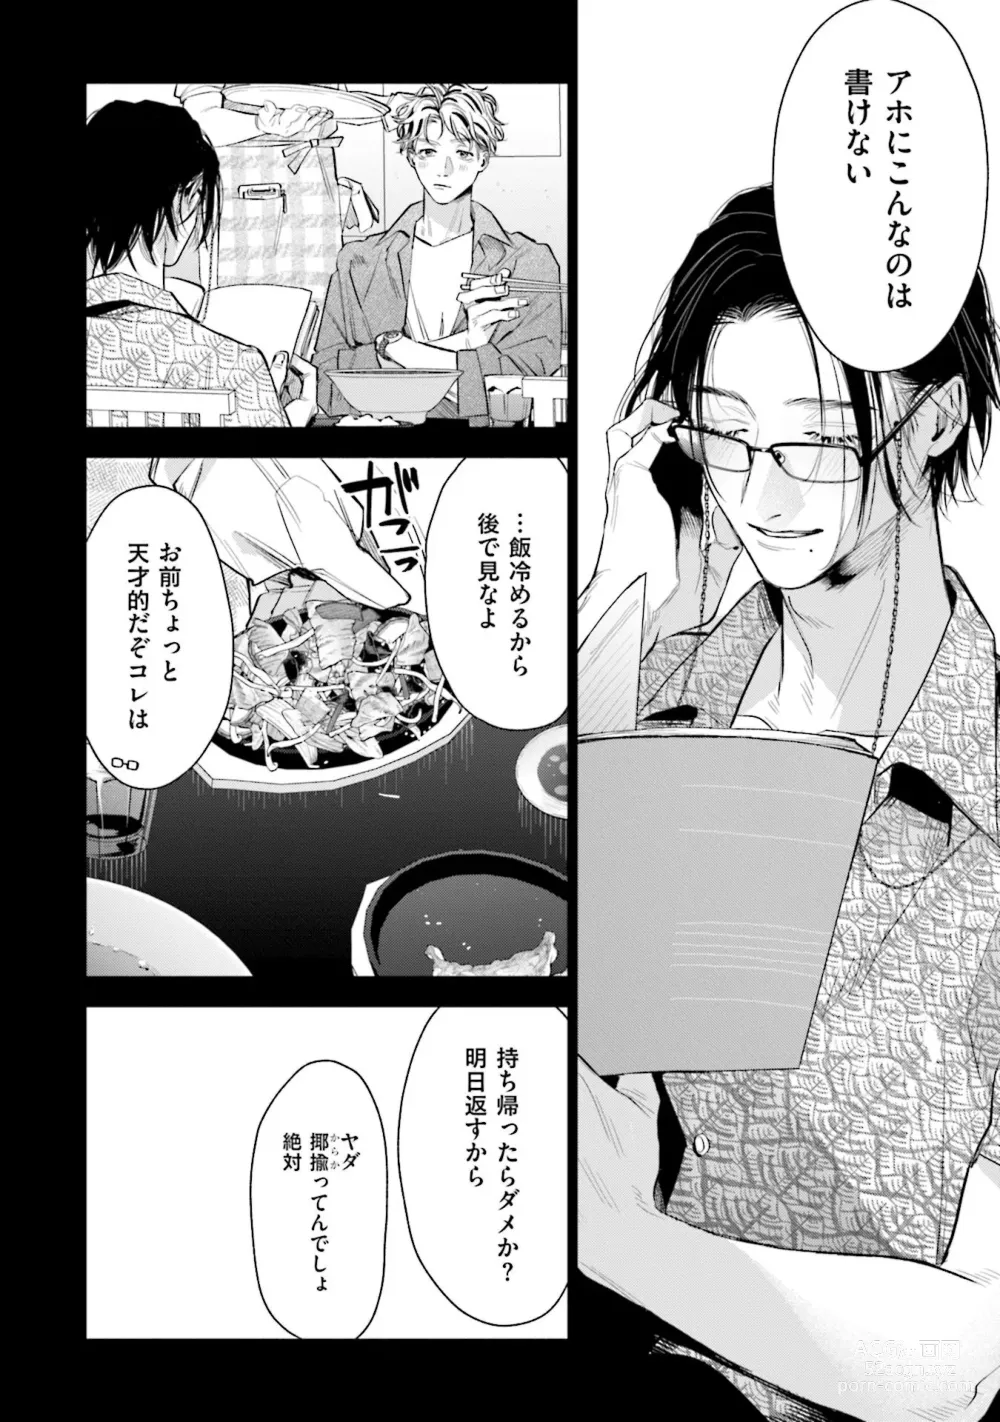 Page 10 of manga Hitoriyogari no Vanilla